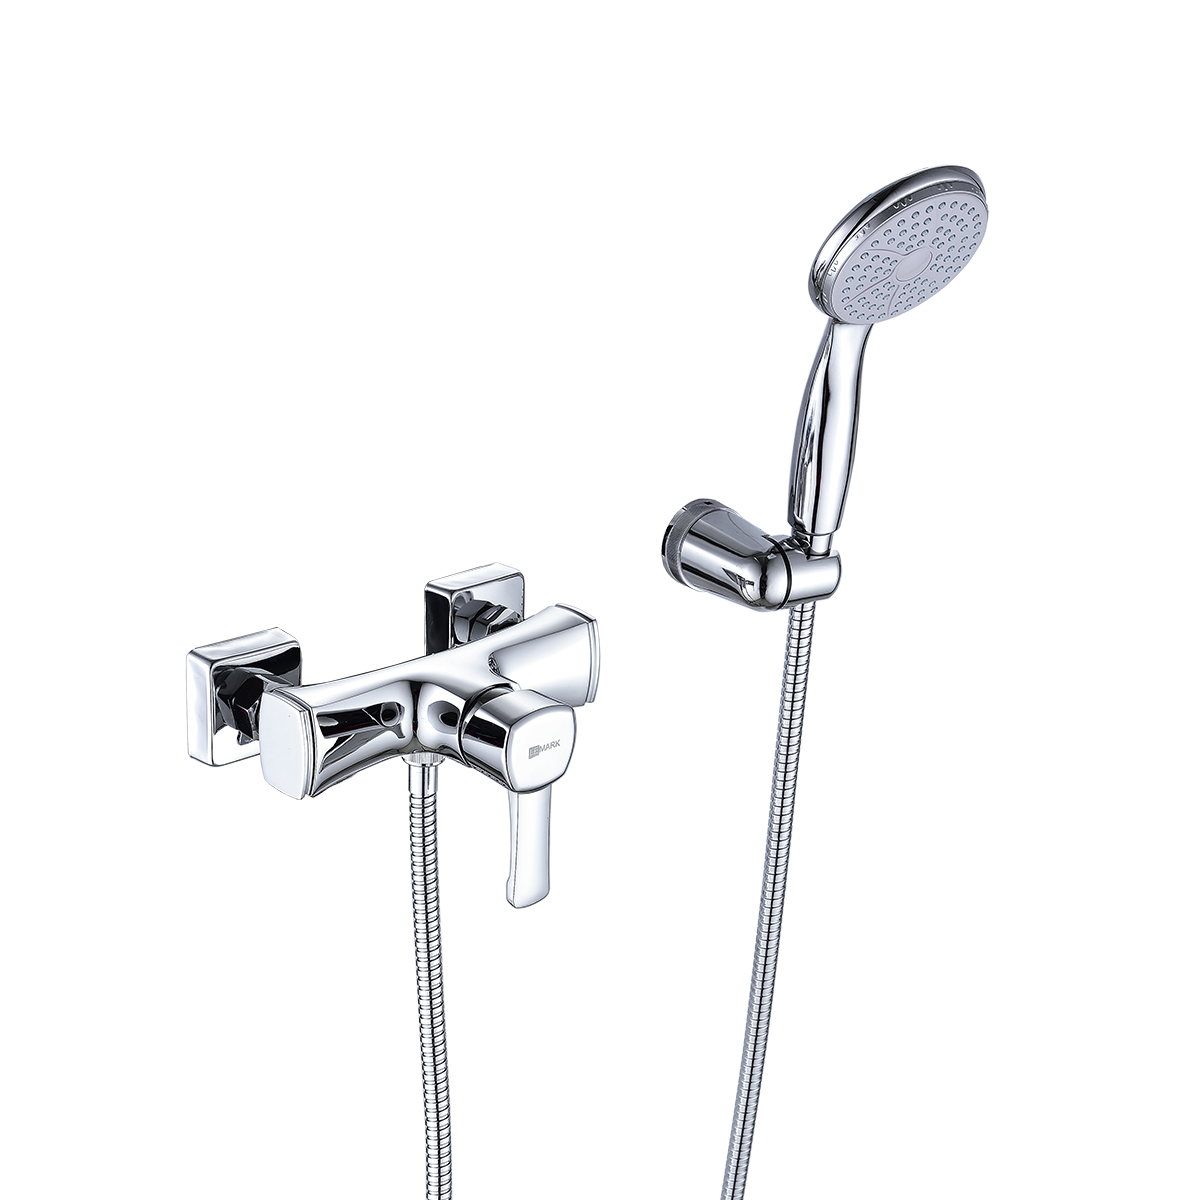 LM0503C Shower faucet